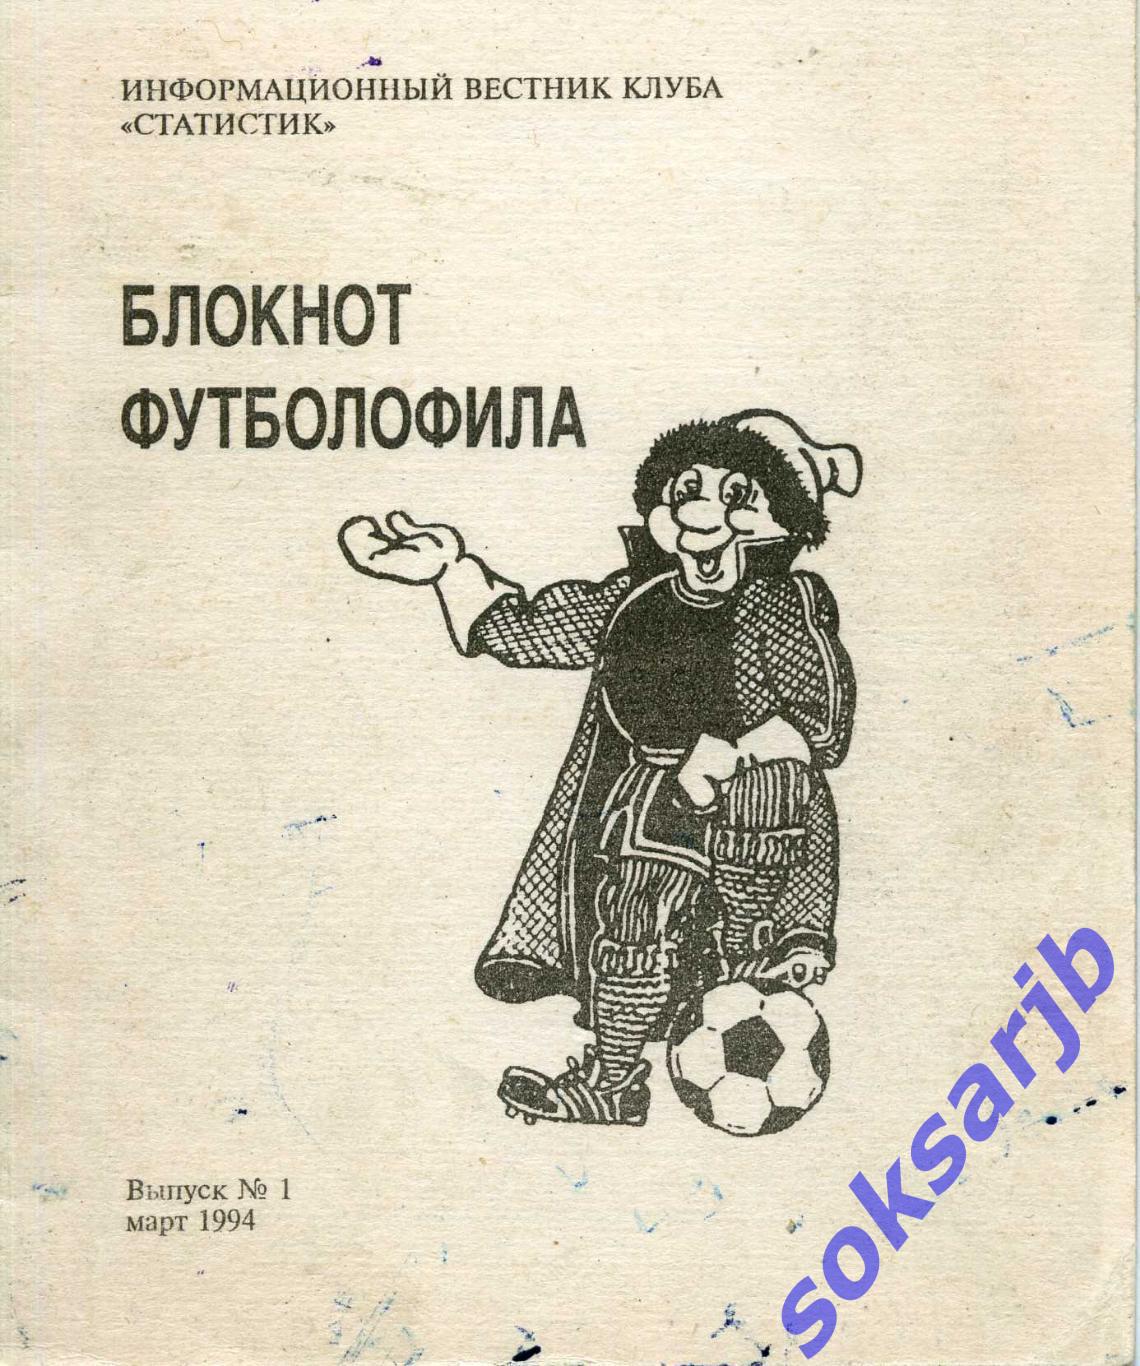 1994. Блокнот футболофила. Выпуск №1 март.